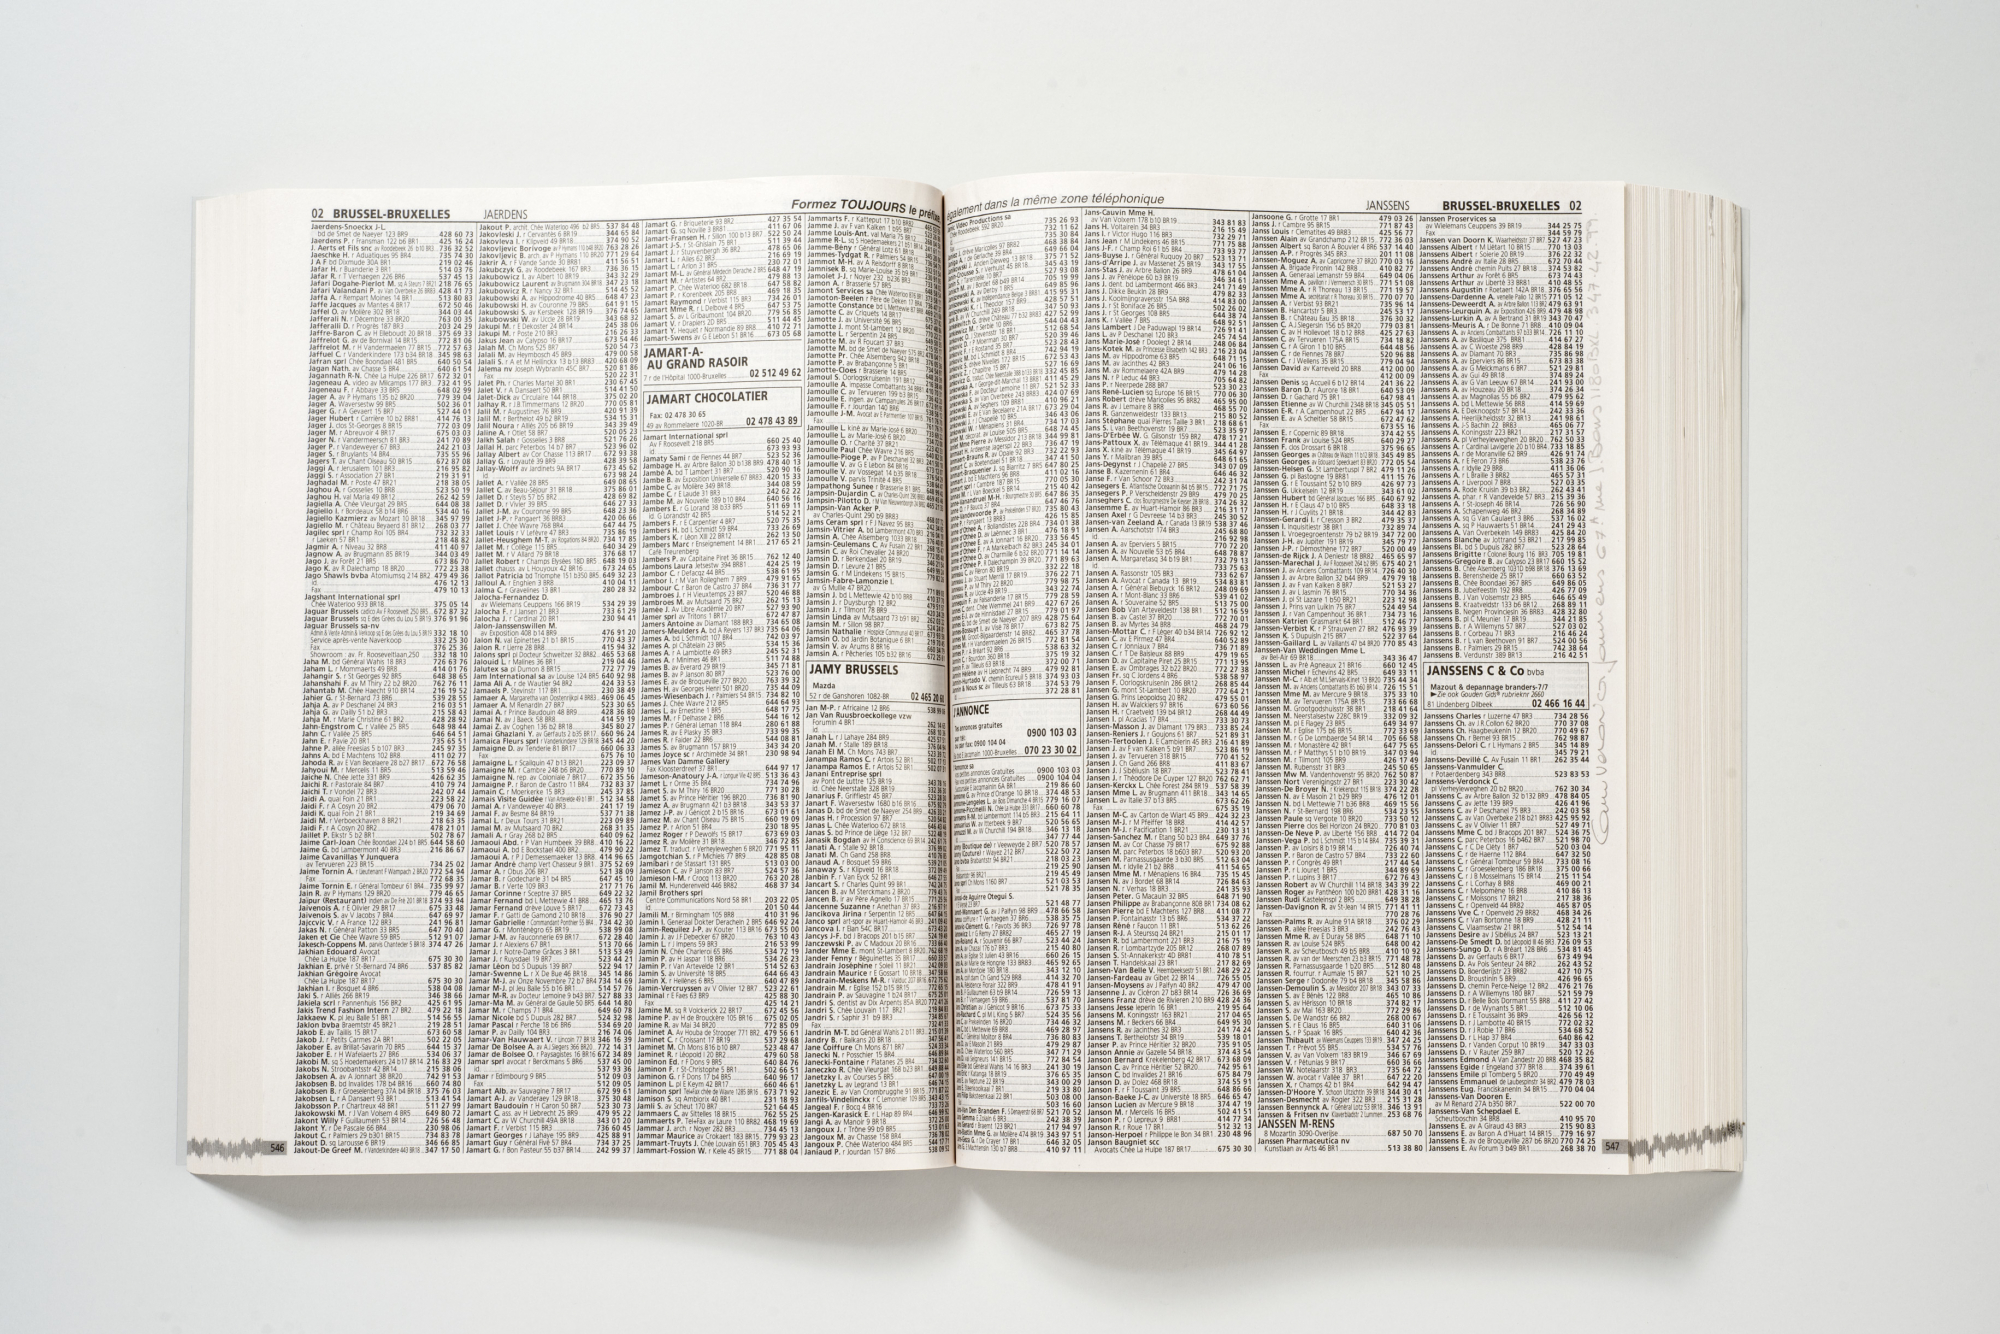 MACS - Œuvres de la collection - Ann Veronica Janssens - 0032.2 (Editions Camomille